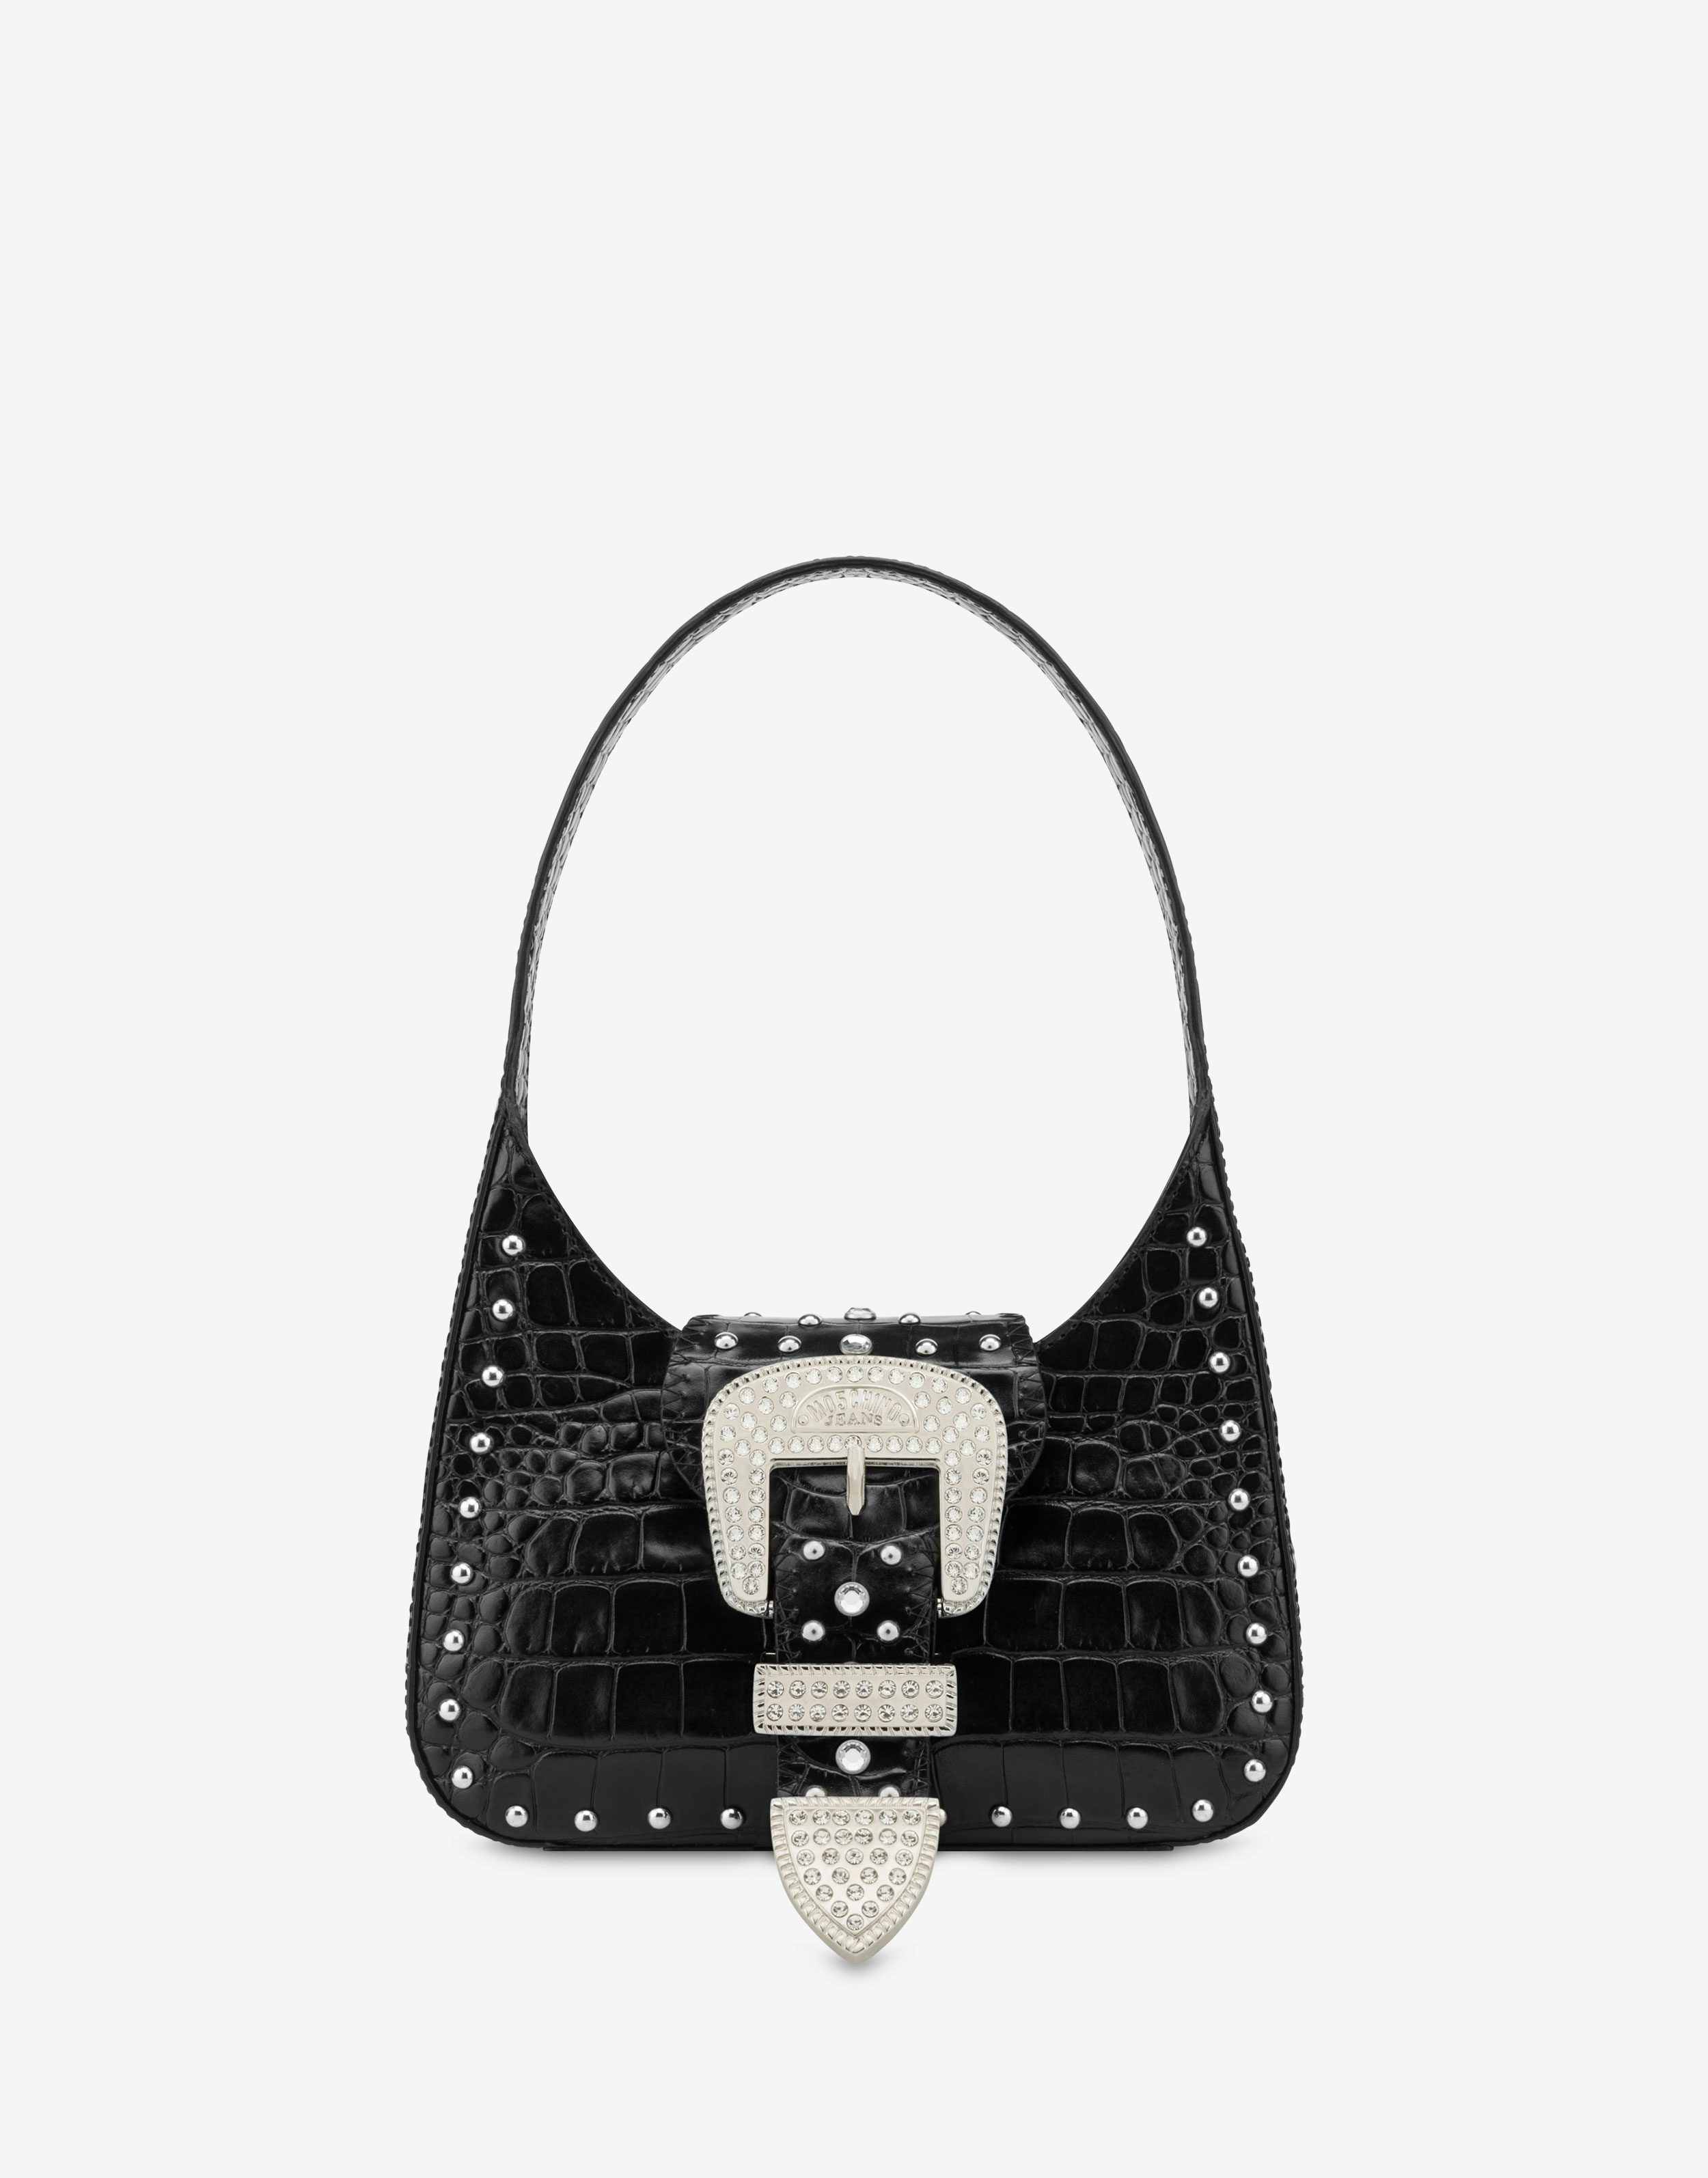 Maxi Buckle crocodile-print handbag